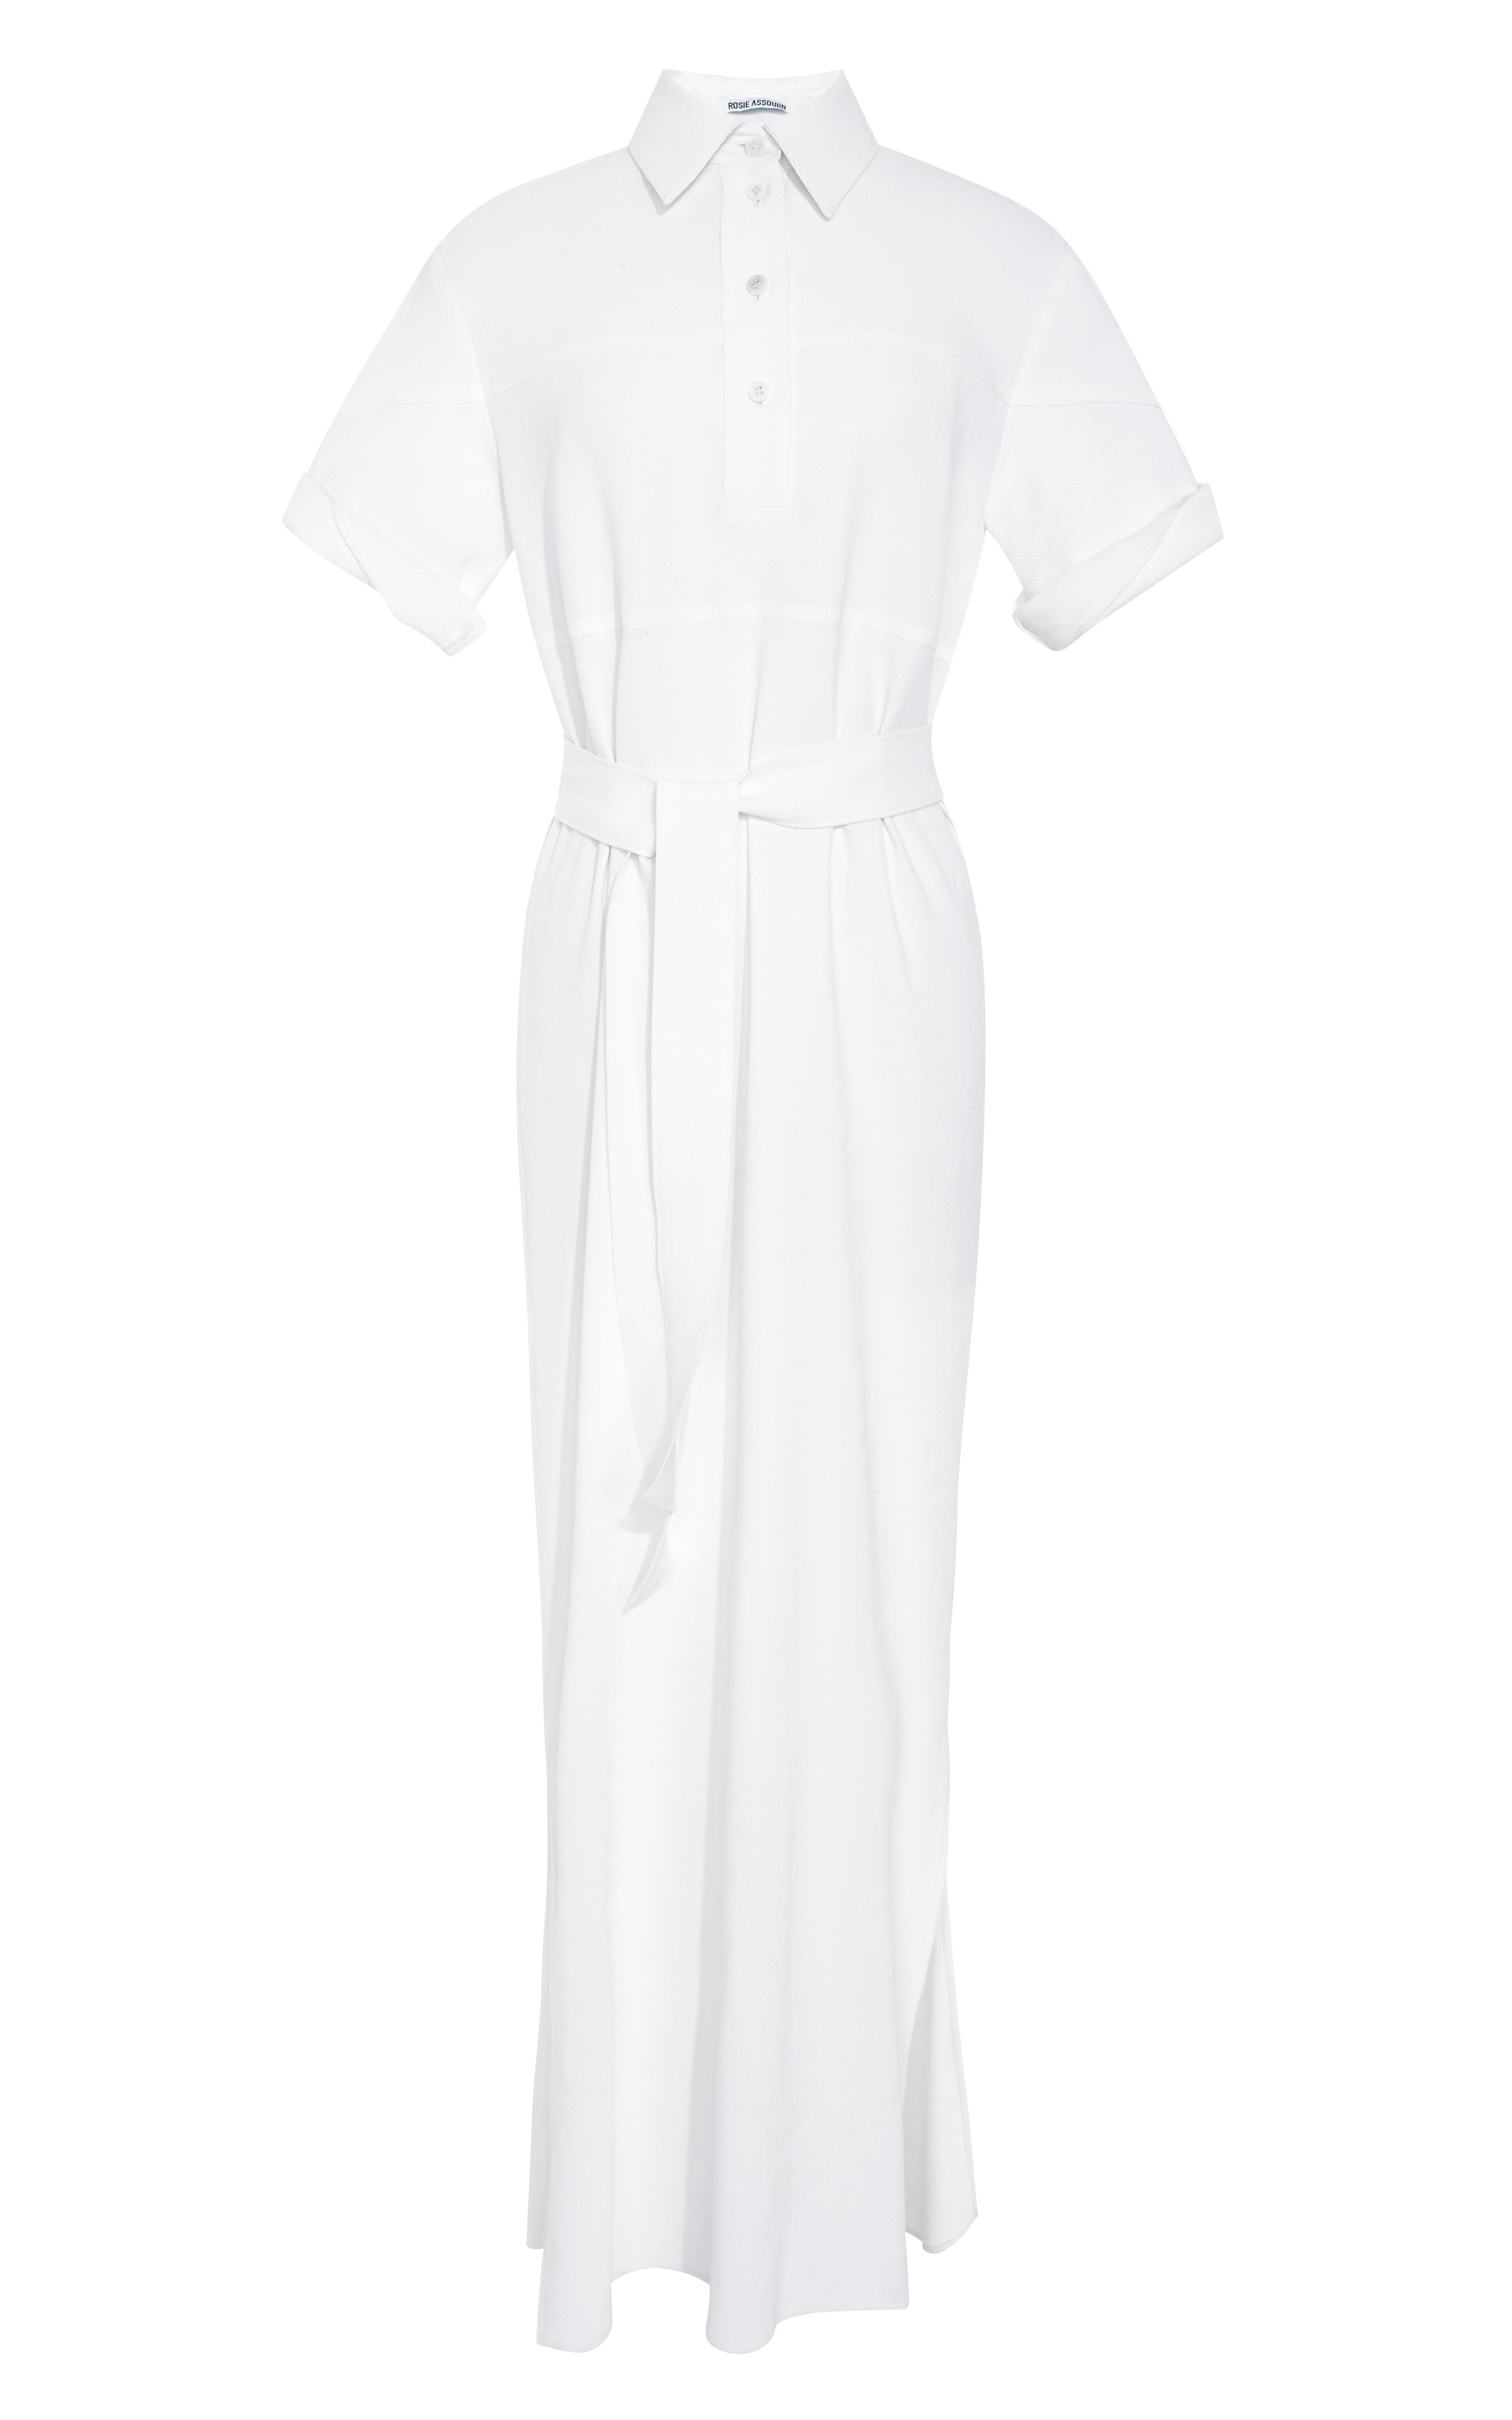 Rosie Assoulin Full-Length Shirt Dress in White | Lyst